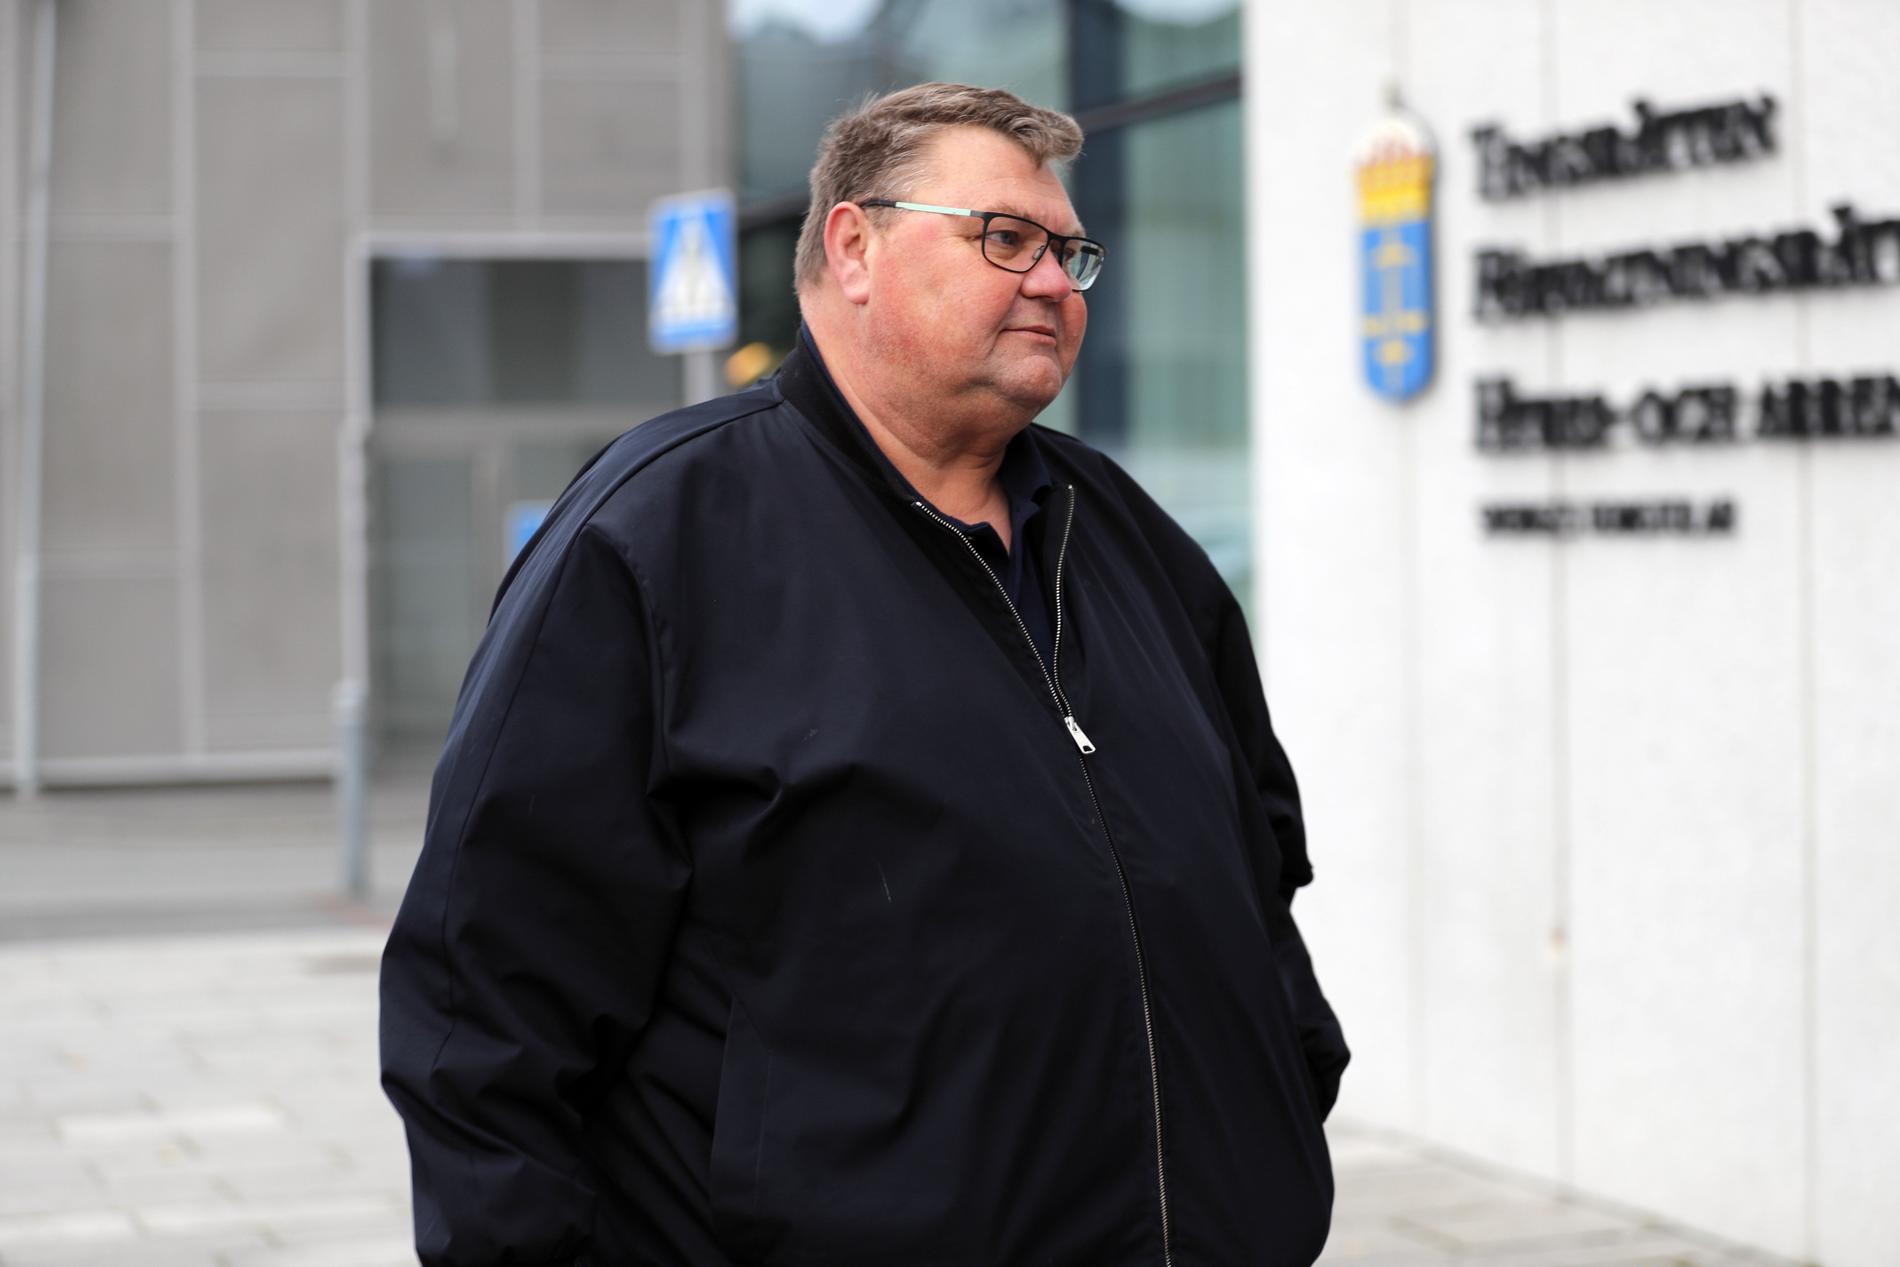 Sverigedemokraternas EU-parlamentariker Peter Lundgren anländer till rättegången vid Jönköpings tingsrätt, där han åtalats för sexuellt ofredande